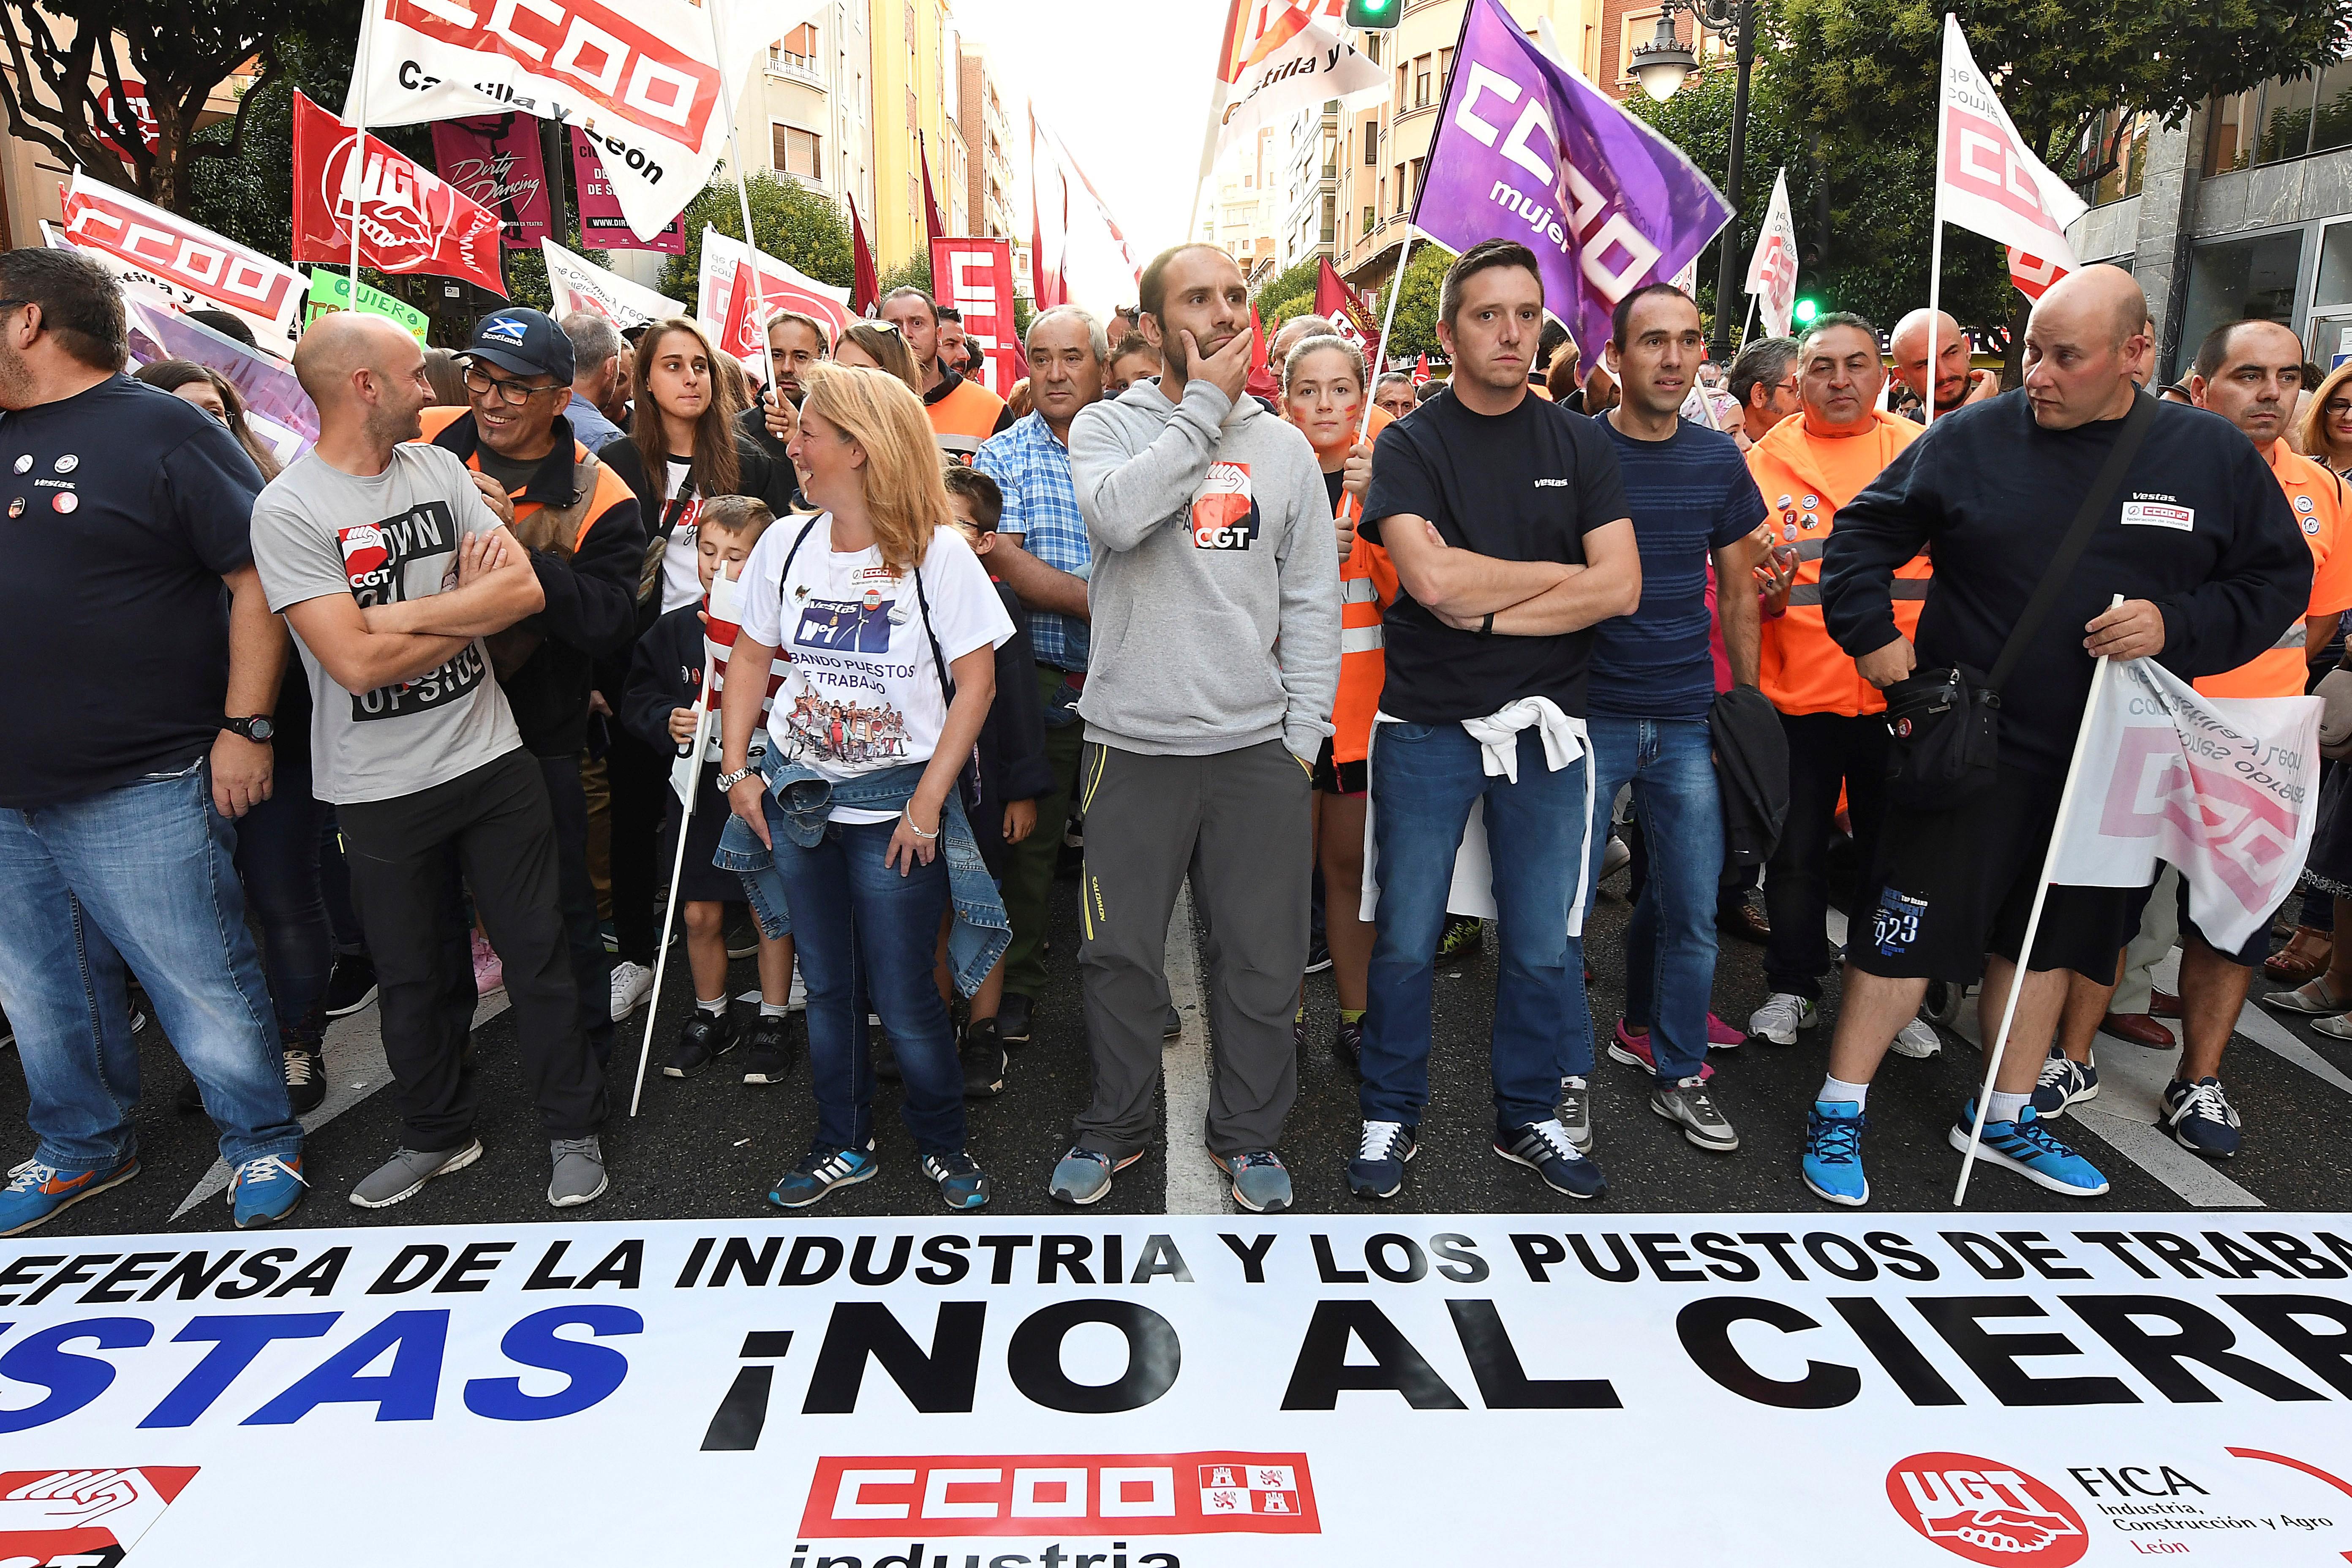 Vista de la multitudinaria manifestación convocada ayer por los sindicatos UGT, CC.OO y CGT, en el centro de León, contra el cierre de Vestas. EFE